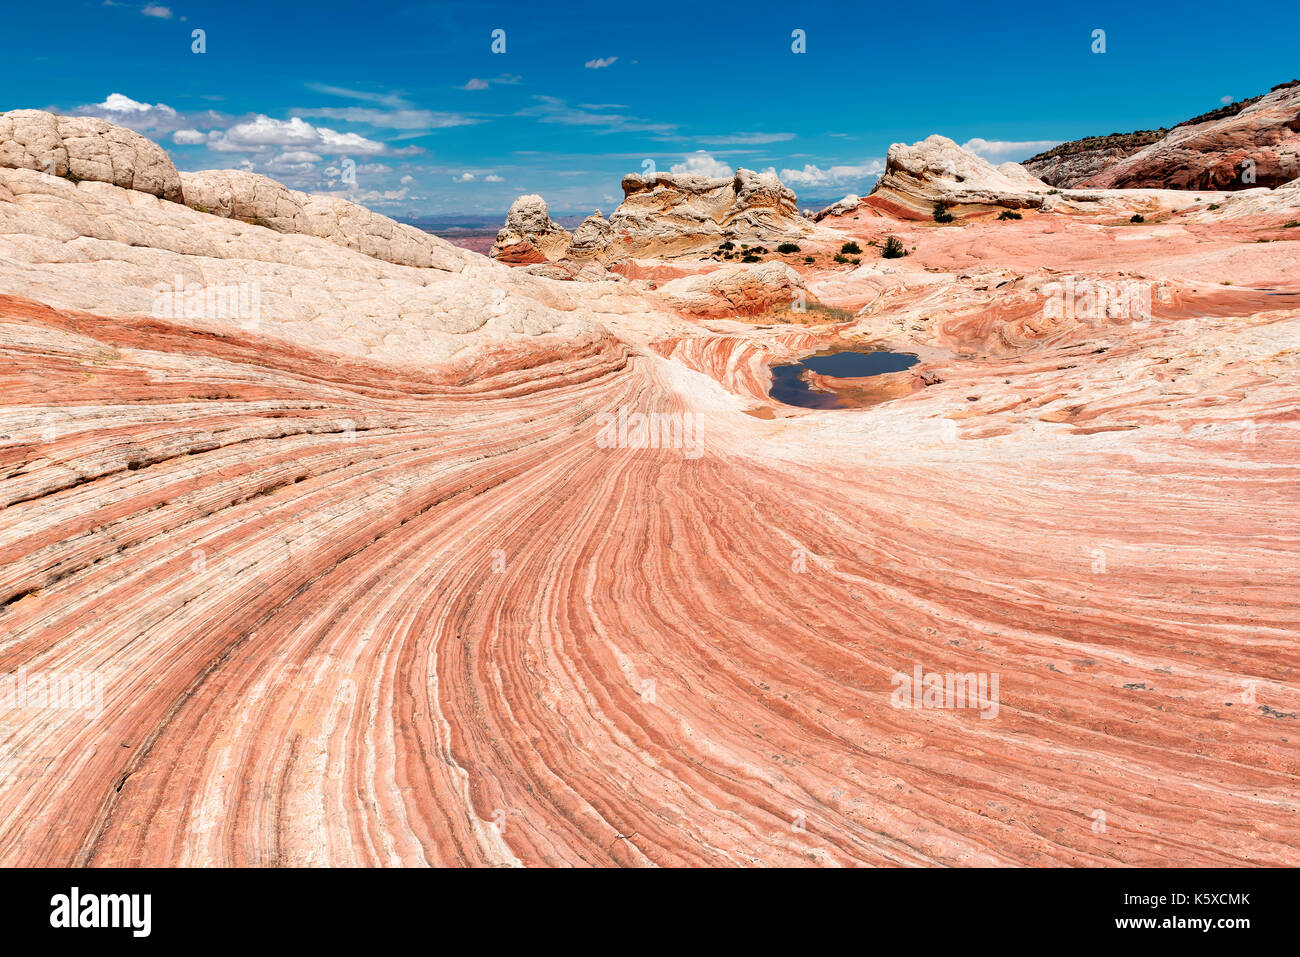 White Pocket Bereich der Vermilion Cliffs National Monument, Arizona. Stockfoto